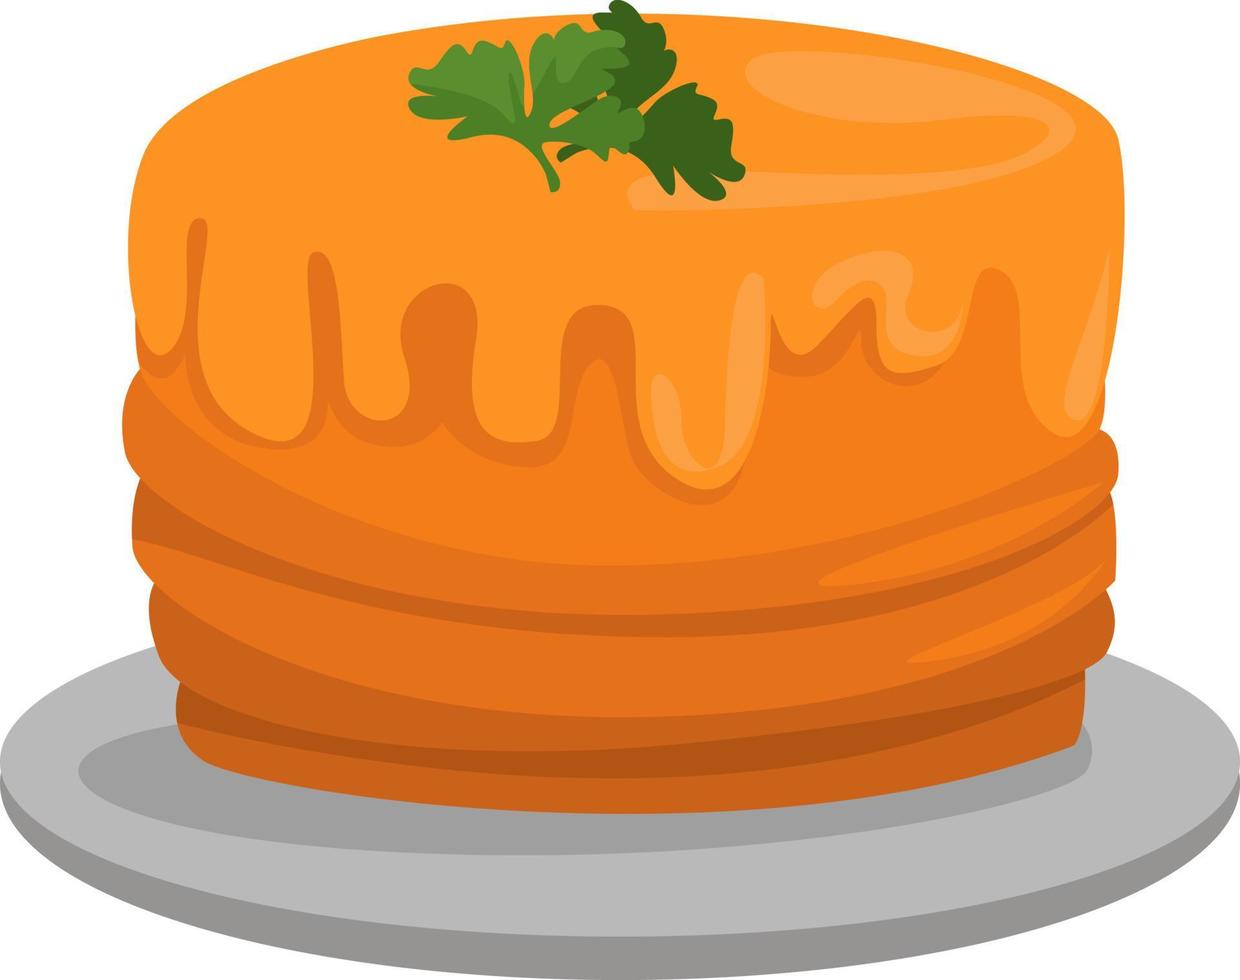 Tarta de naranja, ilustración, vector sobre fondo blanco.